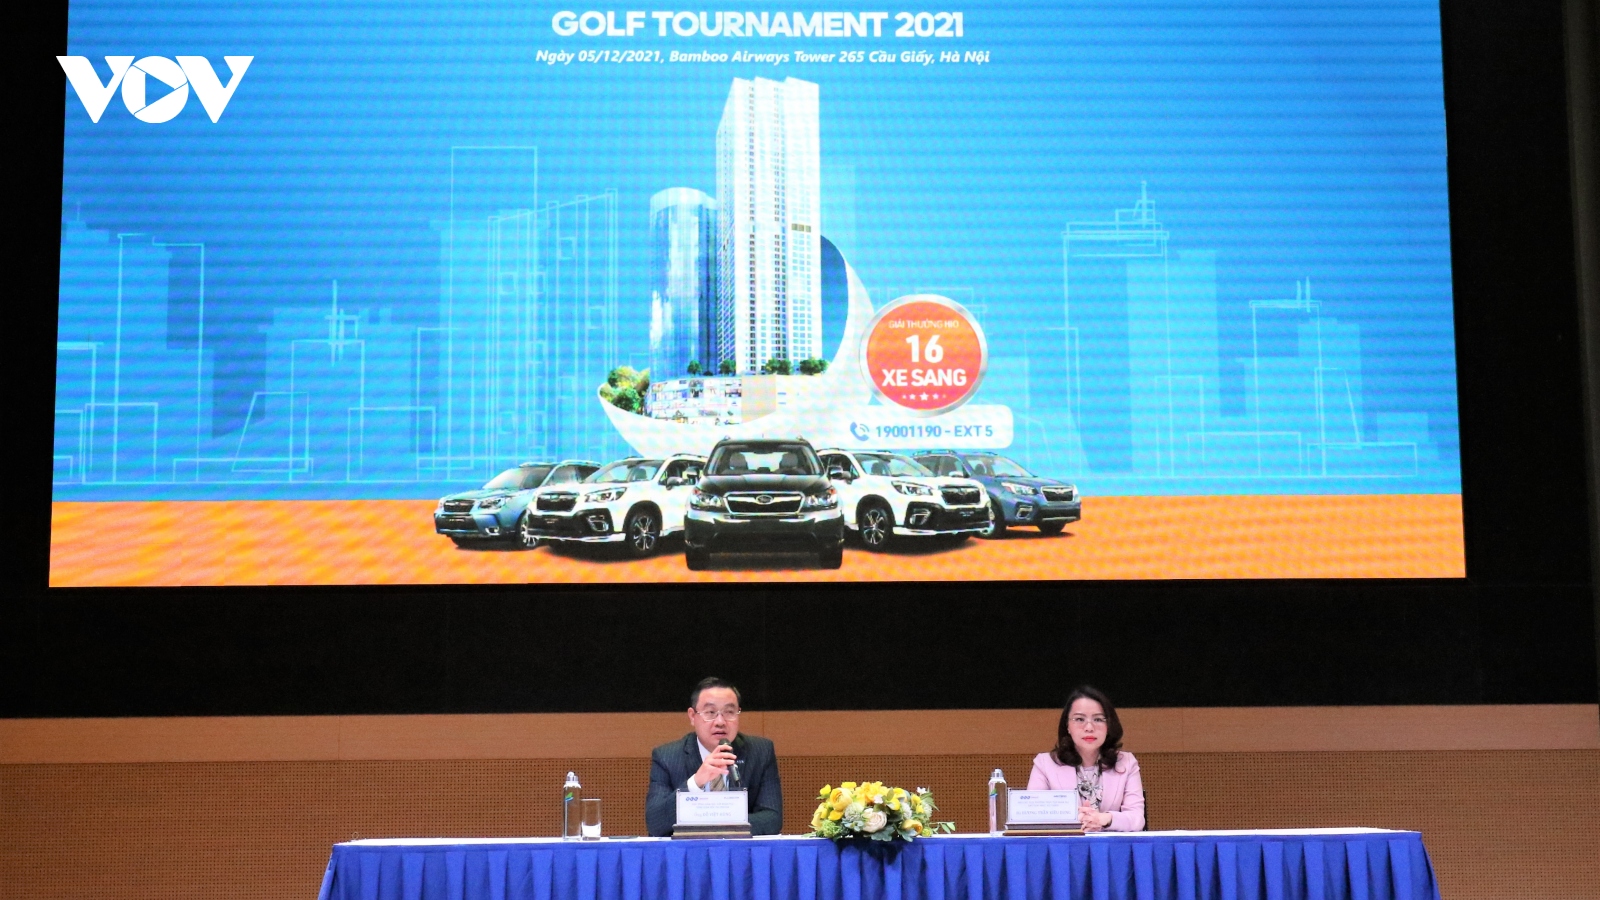 FLC Faros Golf Tournament 2021 chính thức khởi tranh với giải thưởng HIO hàng chục tỷ đồng